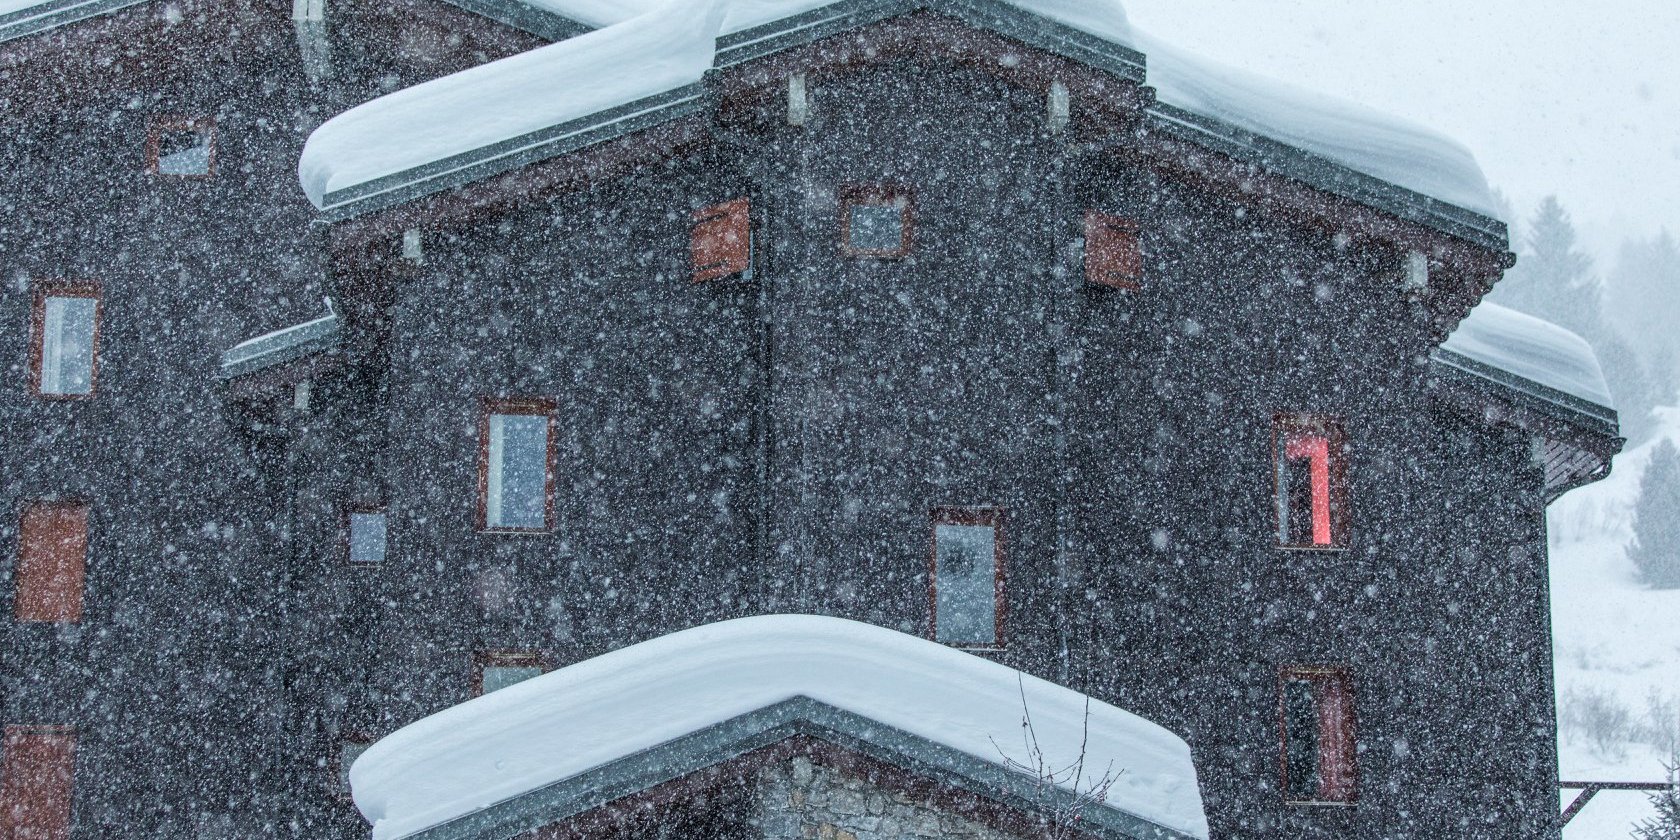 Méribel (FRA). A síterep 40 cm havat vár hétfő estig